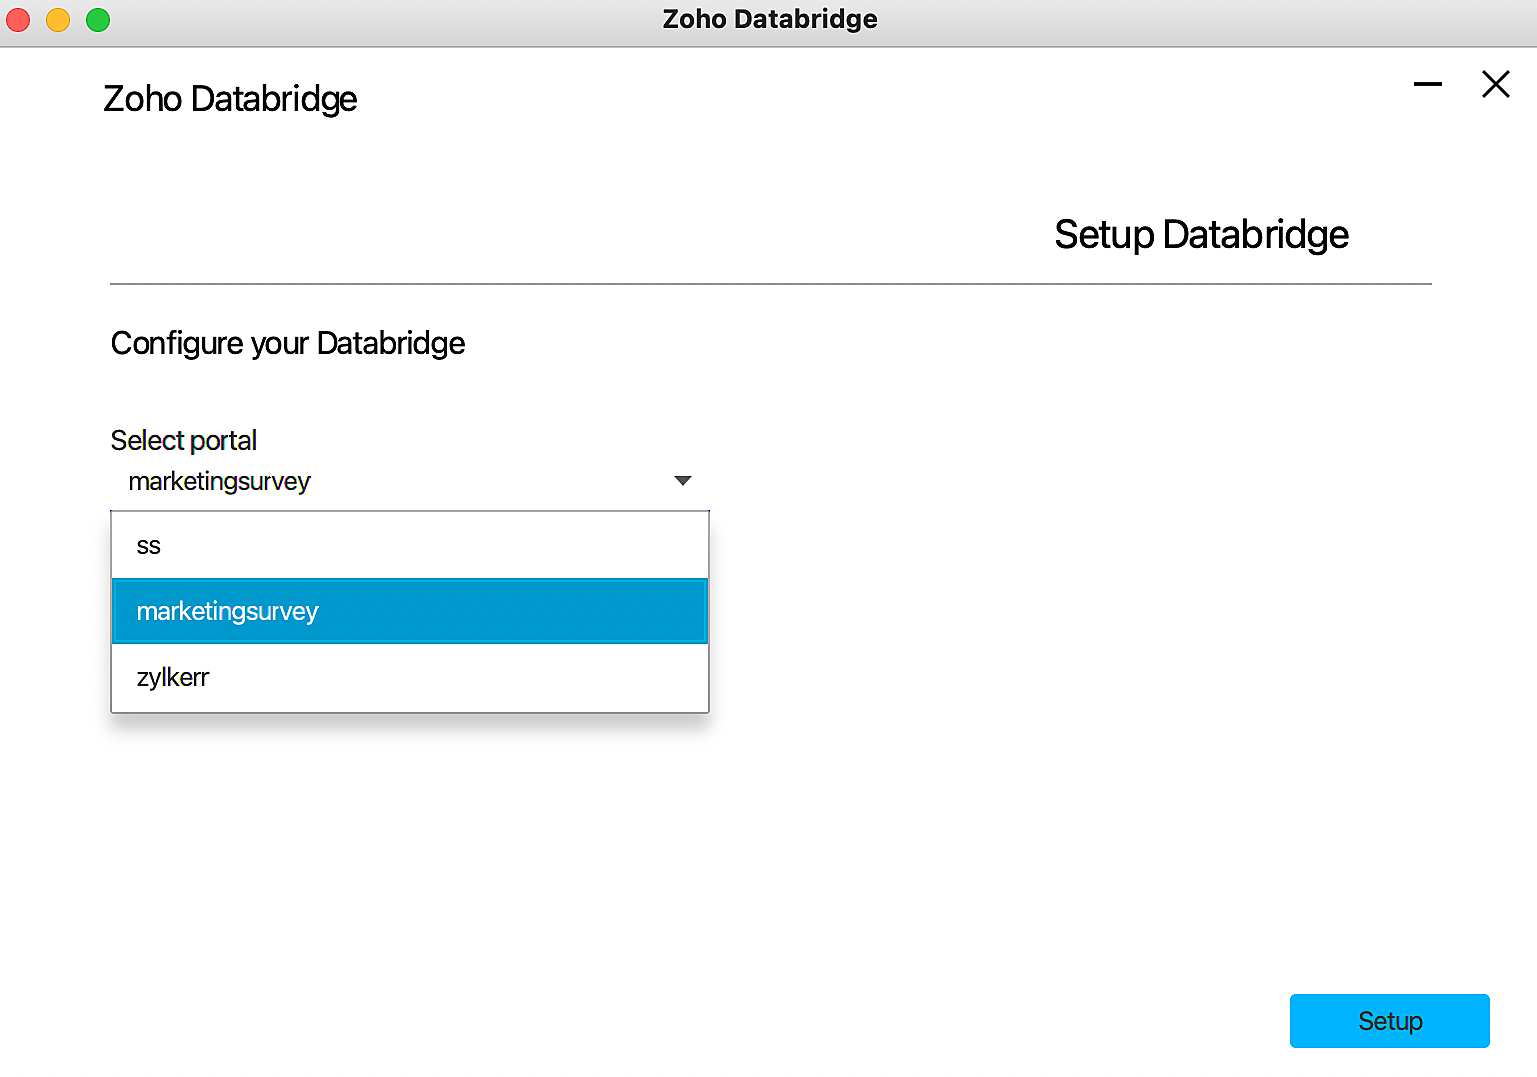 Screen shot of Zoho Databridge software.